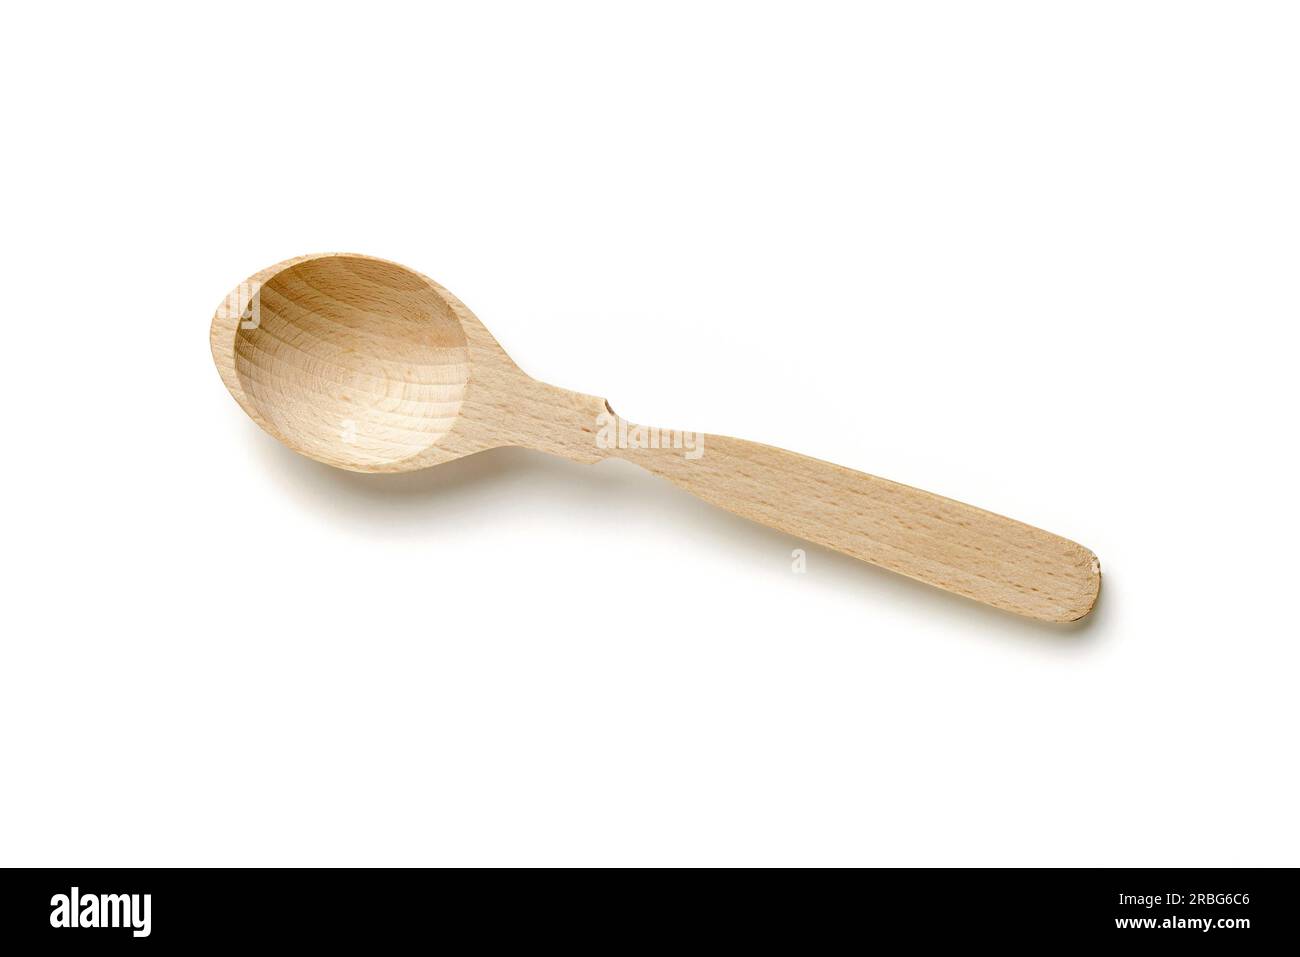 Un piccolo cucchiaio di legno isolato su sfondo bianco Foto Stock